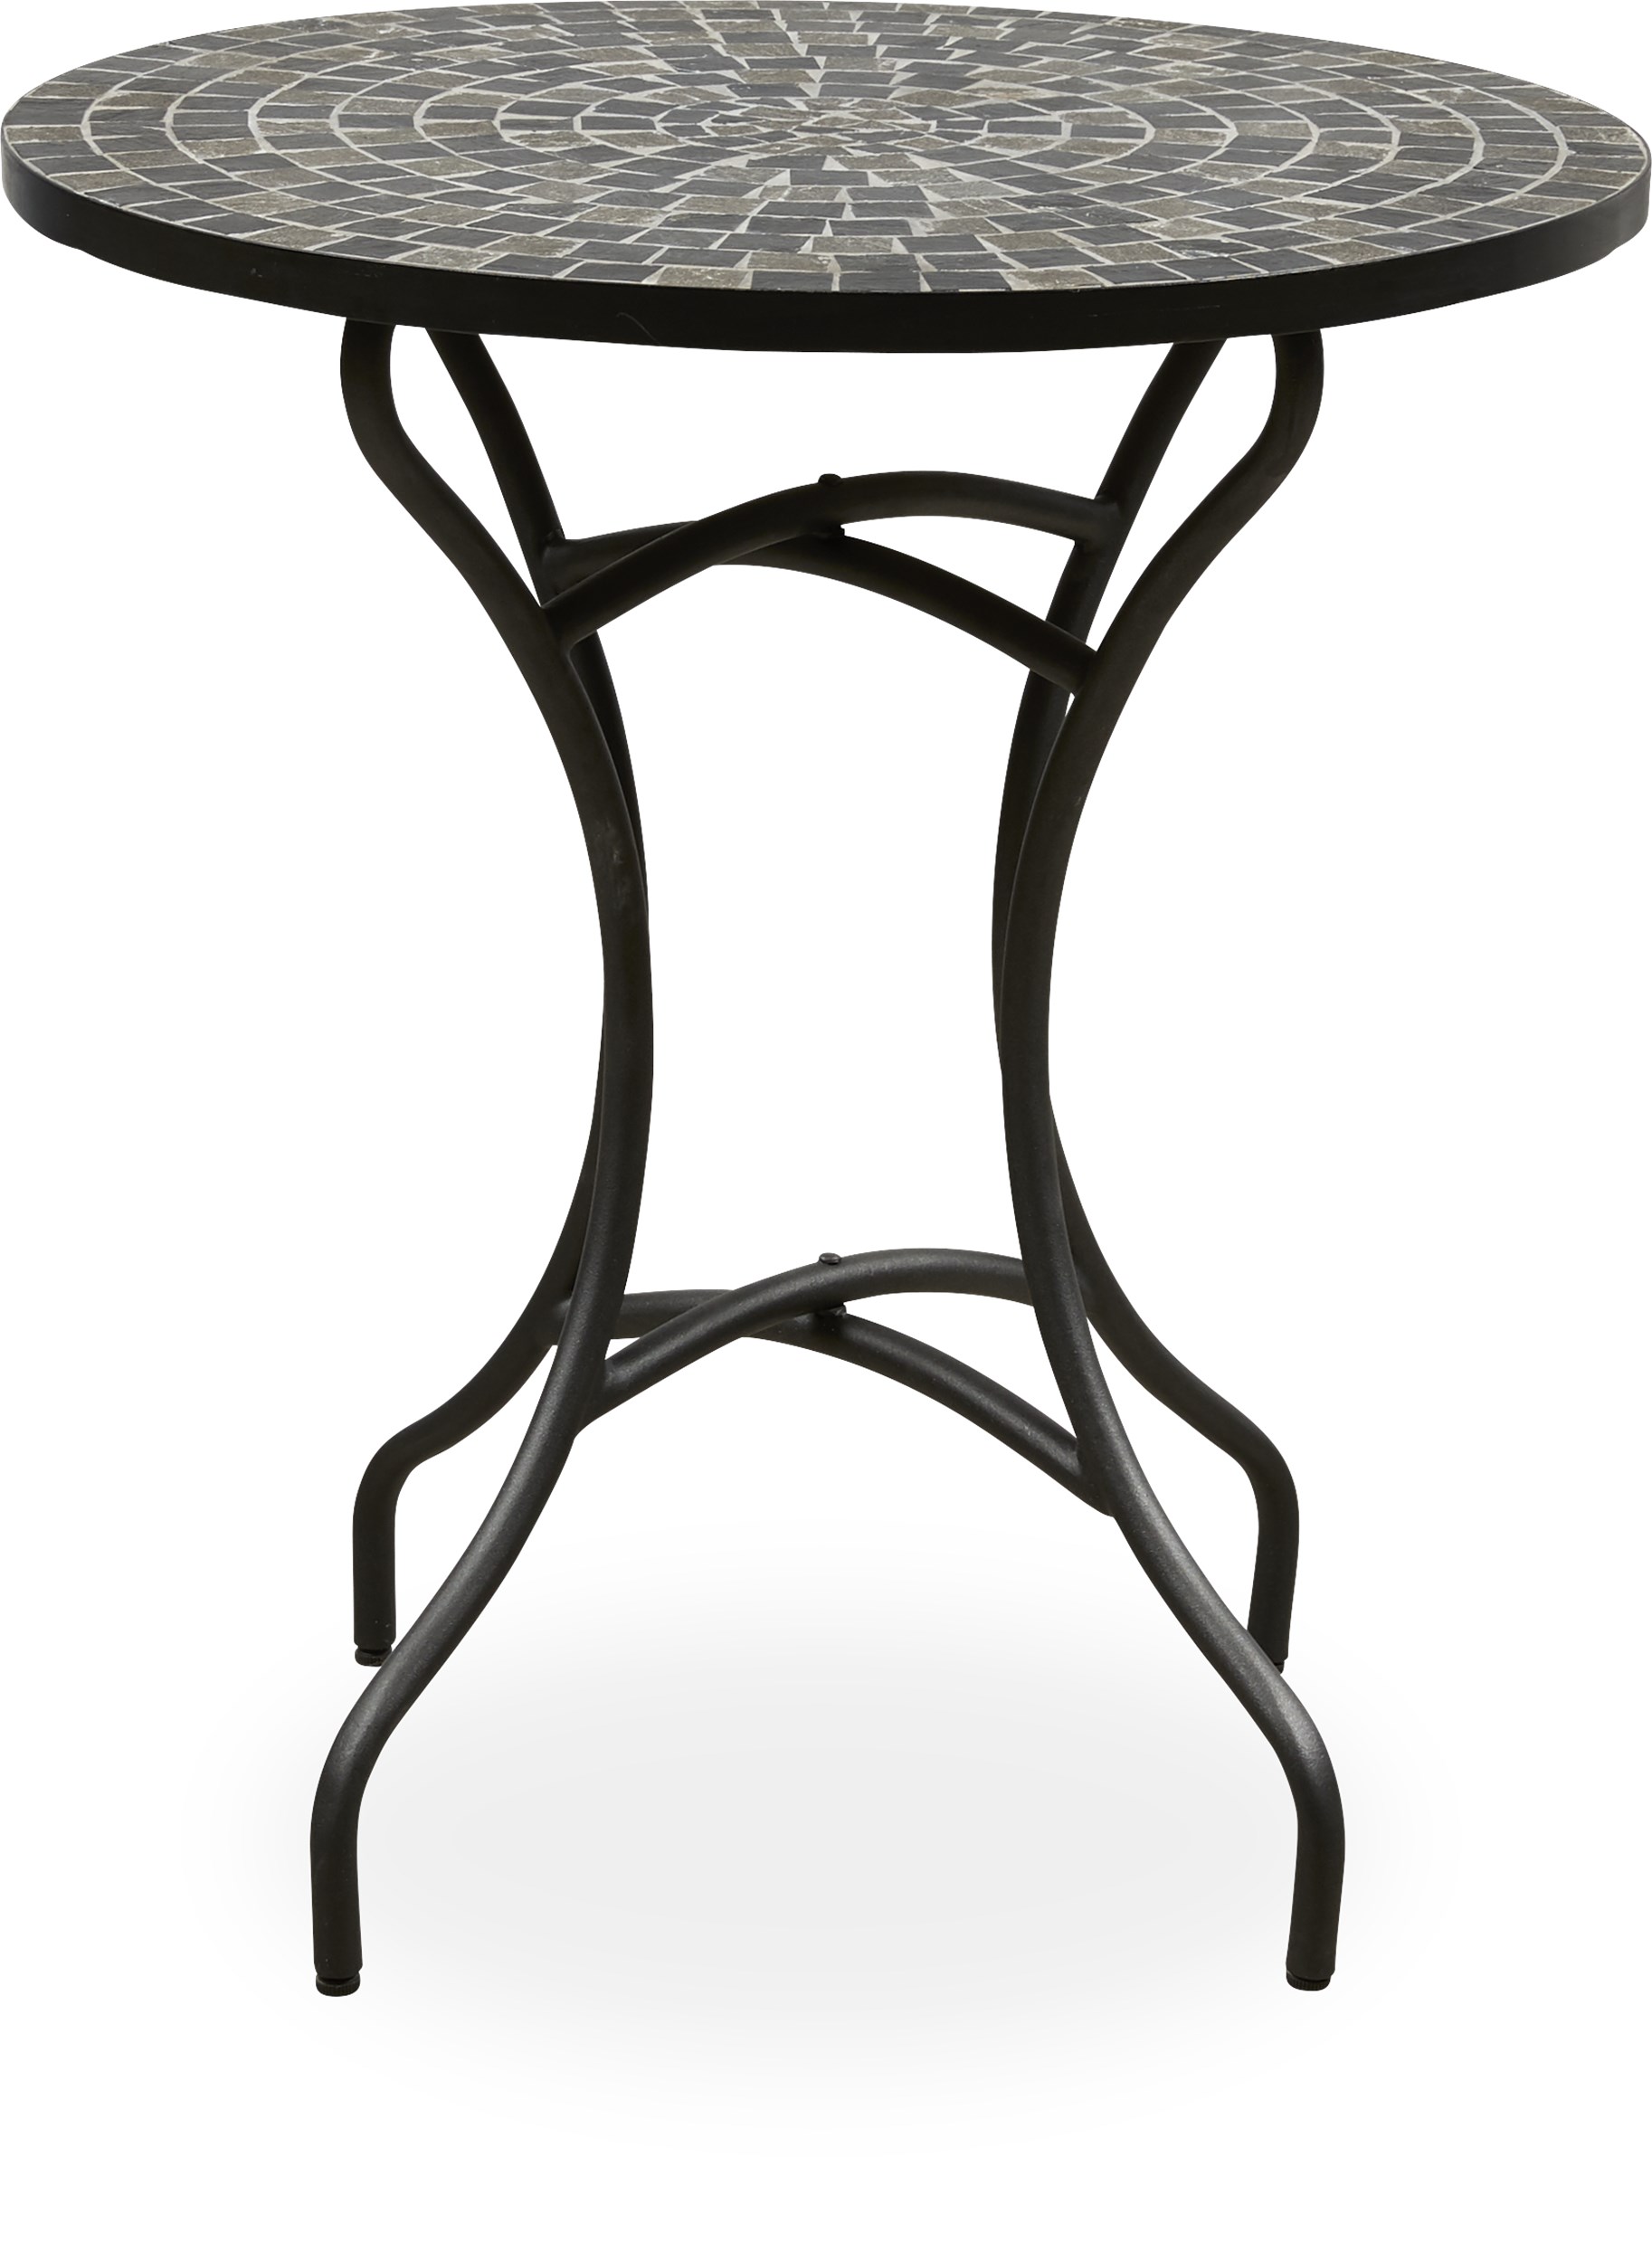 Korsika Cafébord - Bordsskiva i svart/grå mosaik och ben i matt, svart, galvaniserad metall